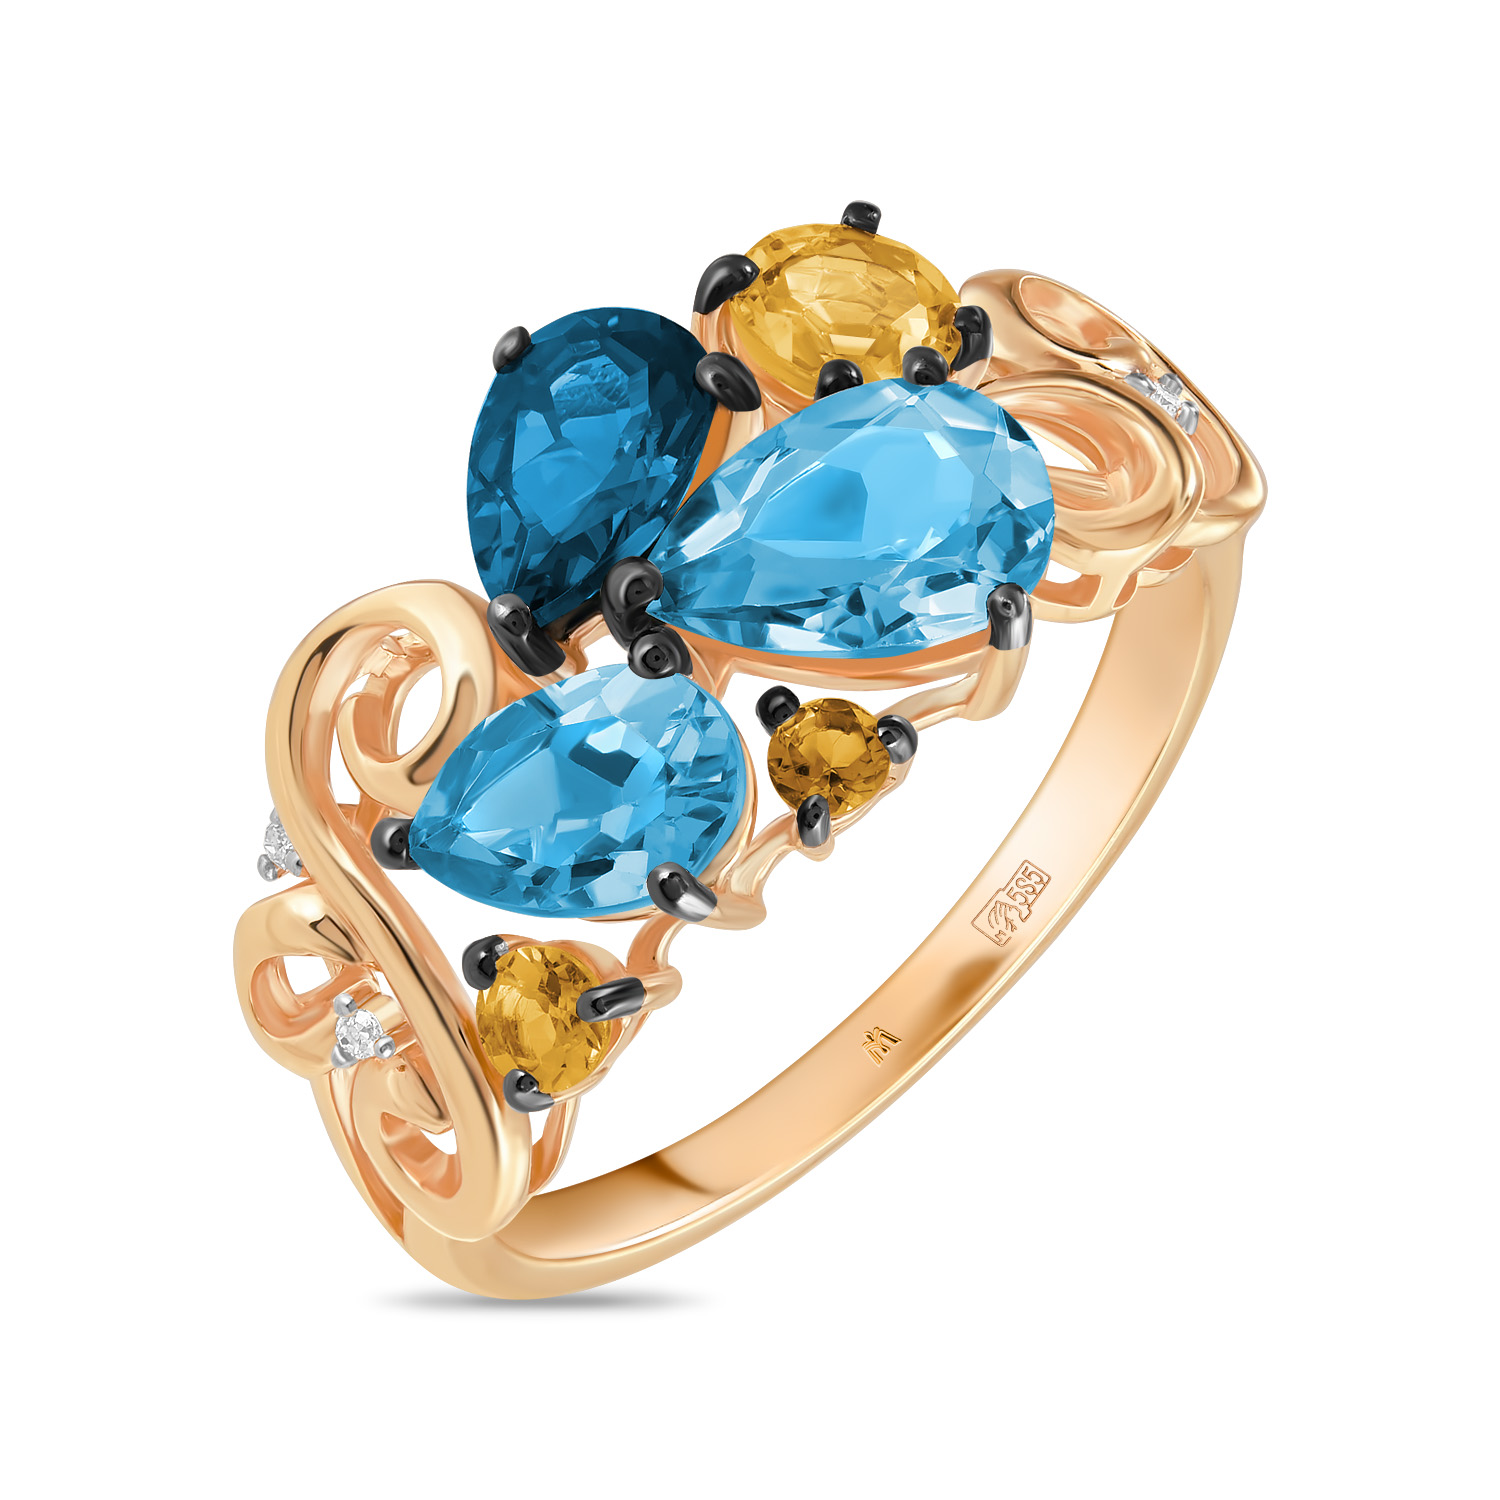 Кольца МЮЗ Золотое кольцо с топазом, цитрином и бриллиантами кольца мюз золотое кольцо с аметистом топазом цитрином бриллиантами гранатом и перидотом